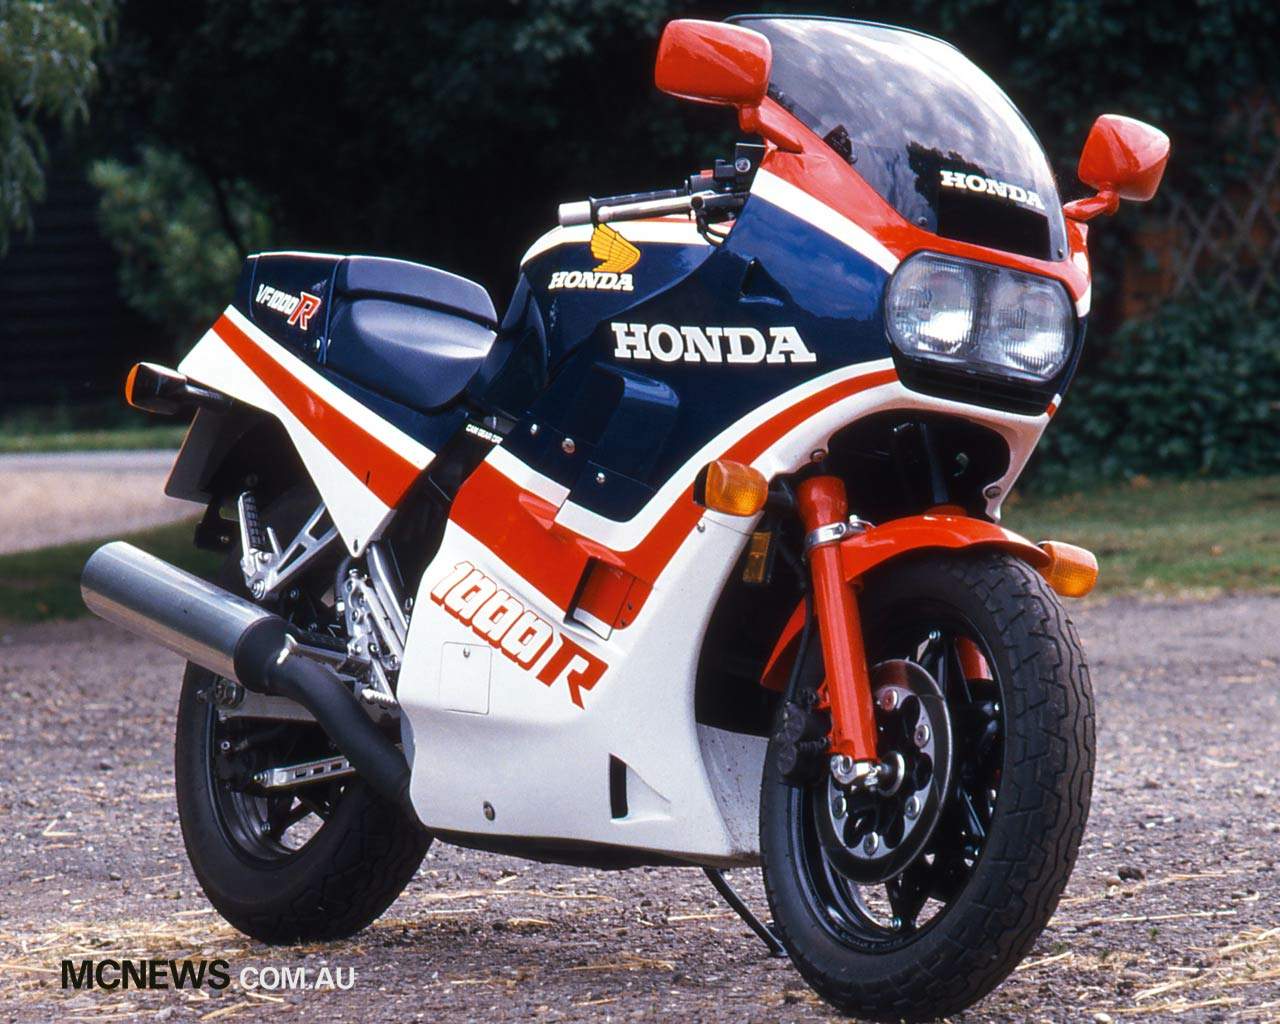 Мотоцикл Honda VF 1000R 1985 фото